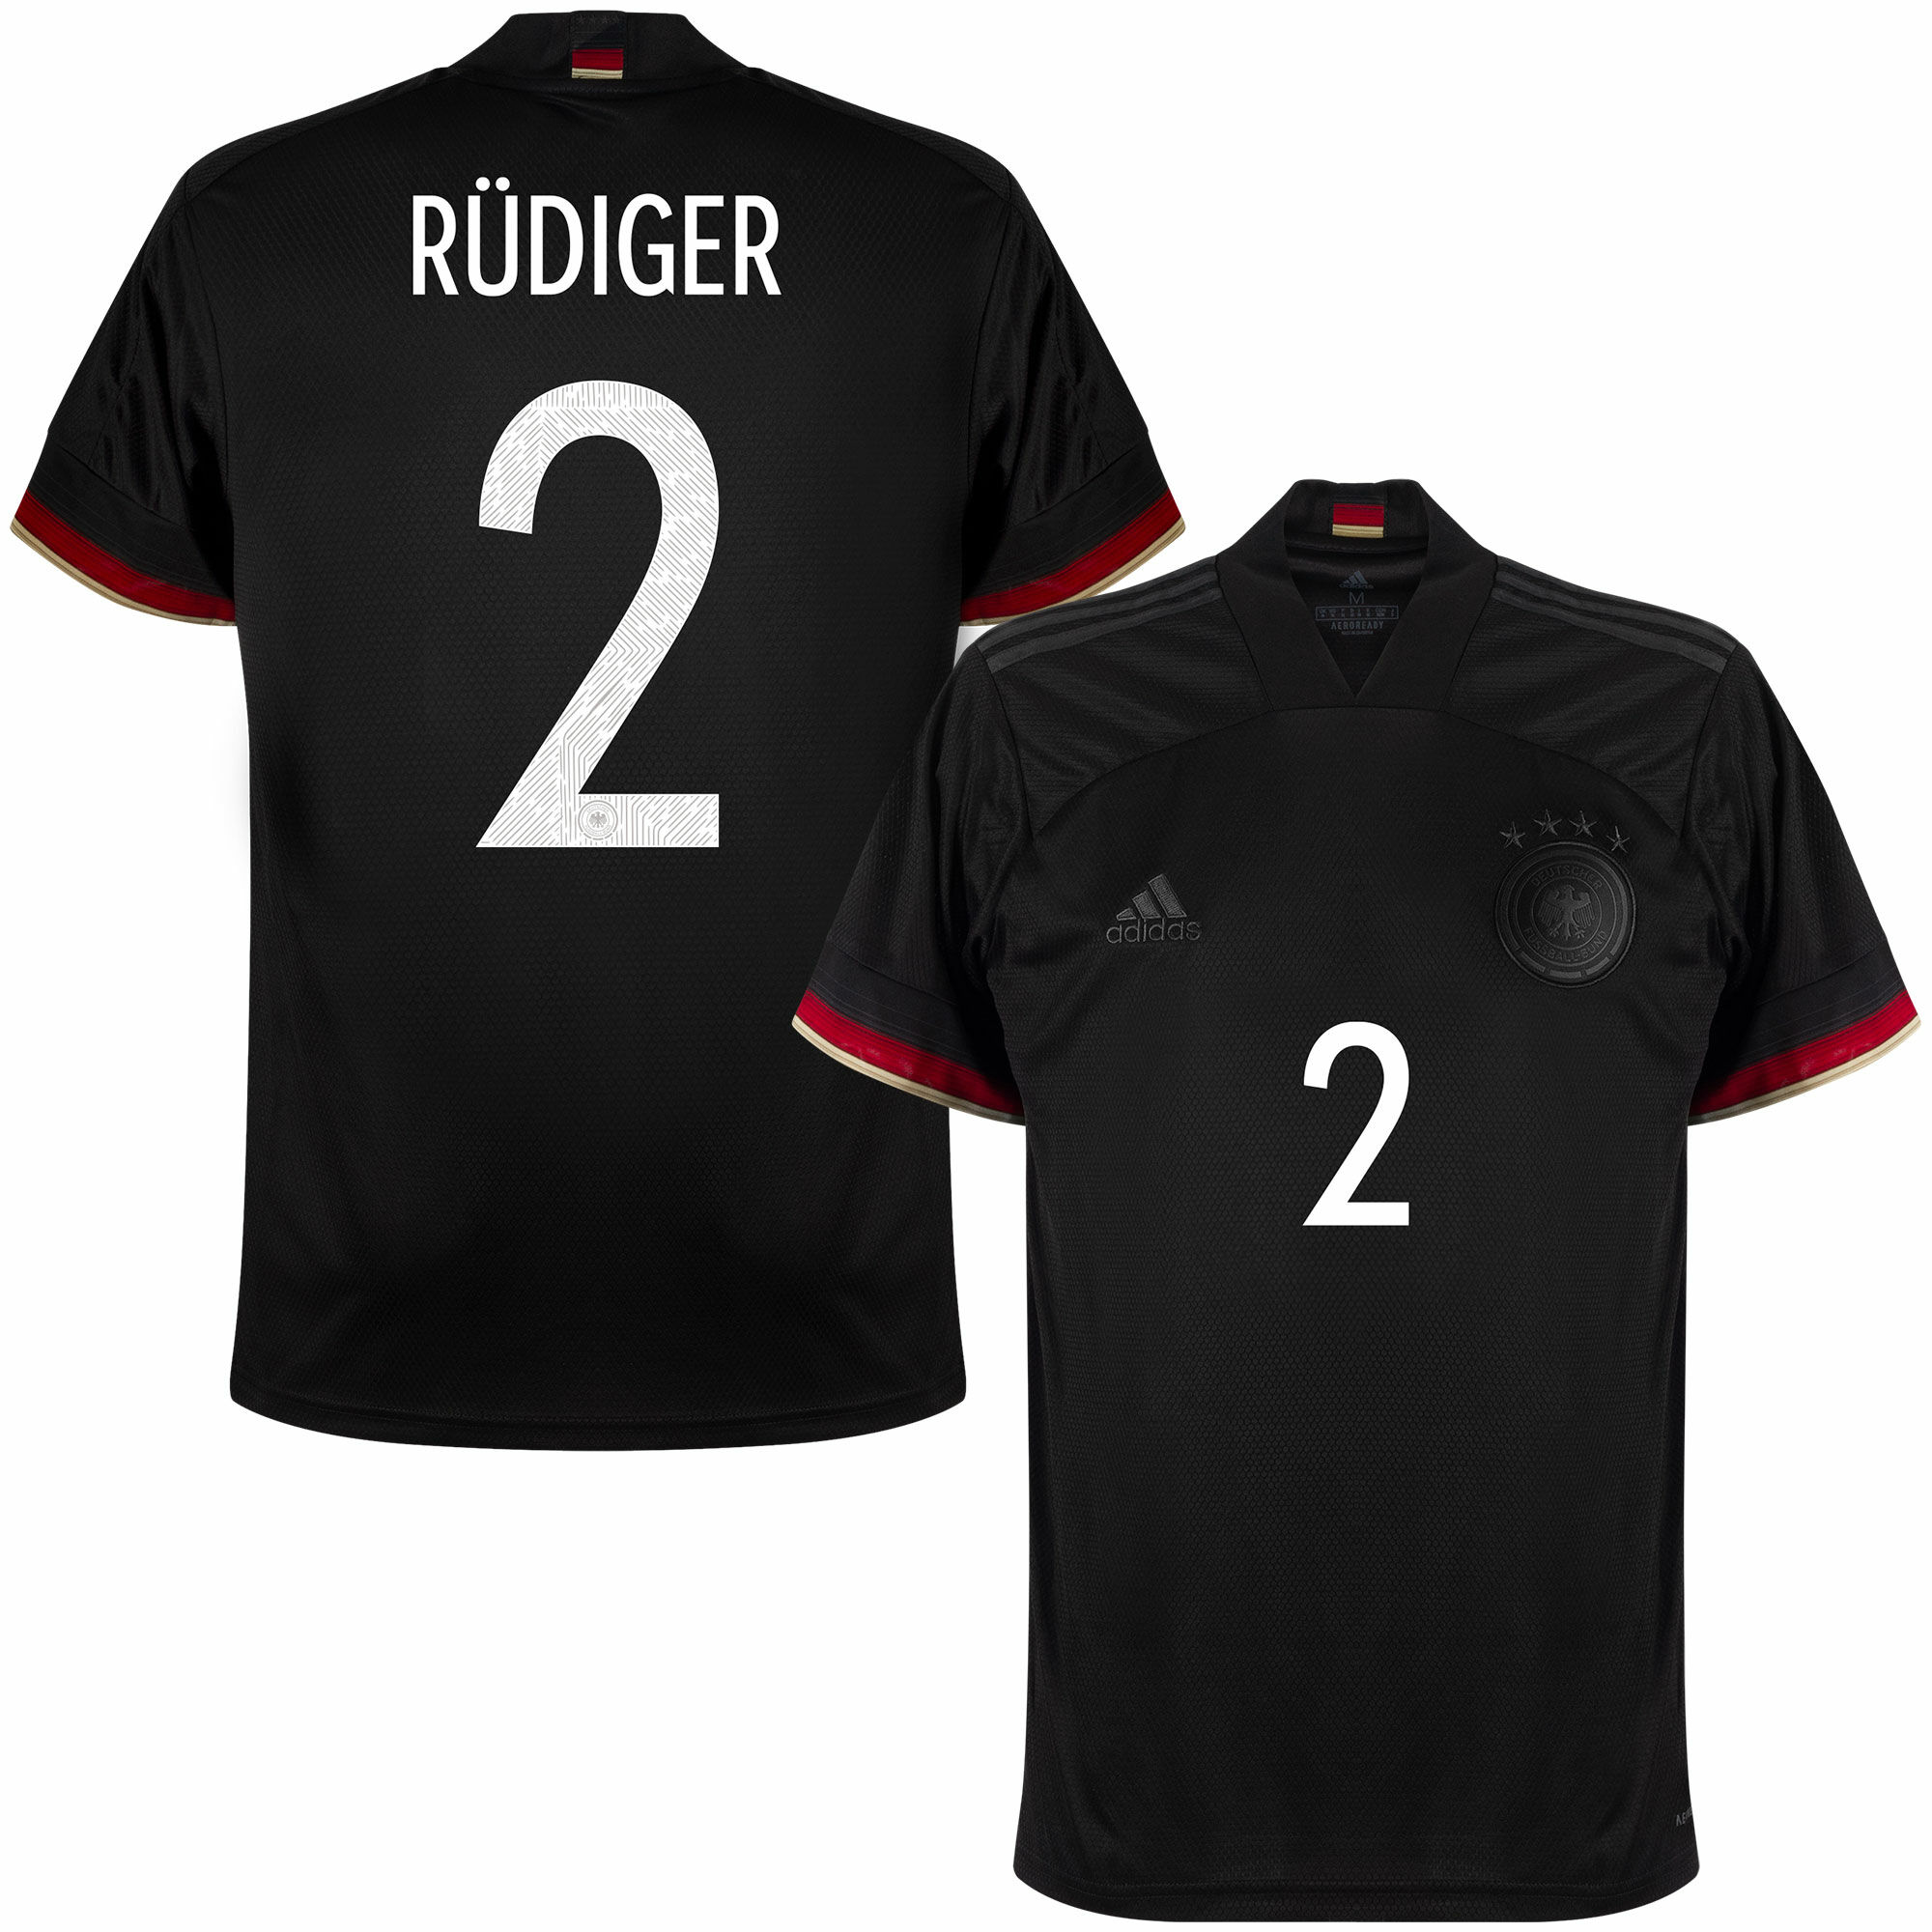 Německo - Dres fotbalový - sezóna 2021/22, Antonio Rüdiger, oficiální potisk, černý, číslo 2, venkovní